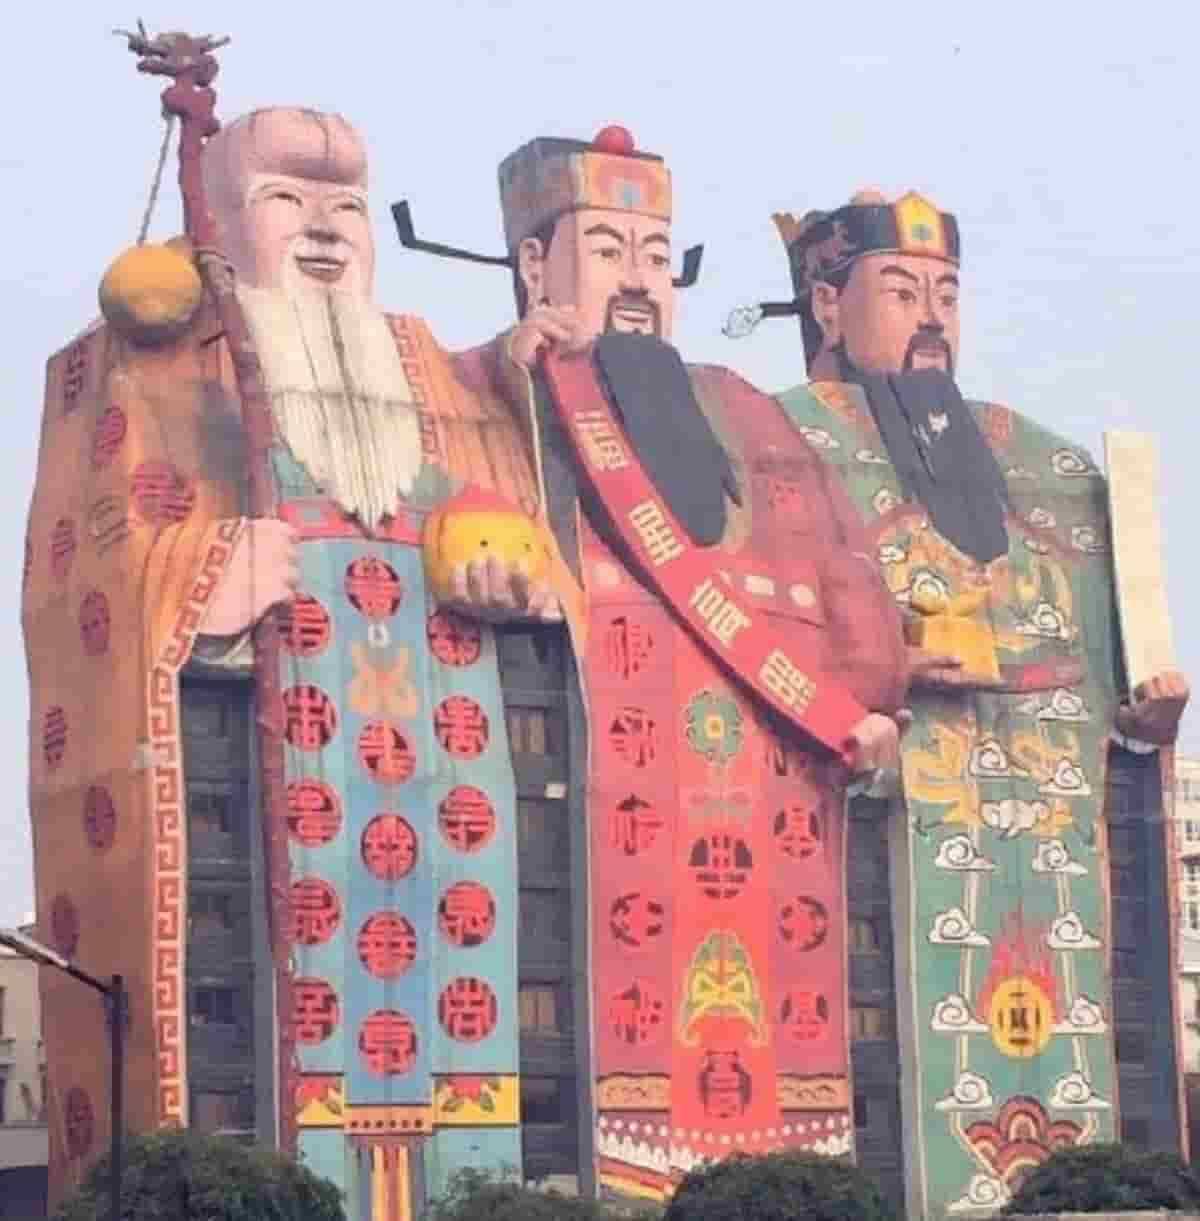 O Tianzi Hotel, localizado em Langfang, província de Hebei do norte da China, é considerado um dos edifícios mais feios da China, apresentando os deuses da fortuna, felicidade e longevidade. Foto: Reprodução/ Weibo